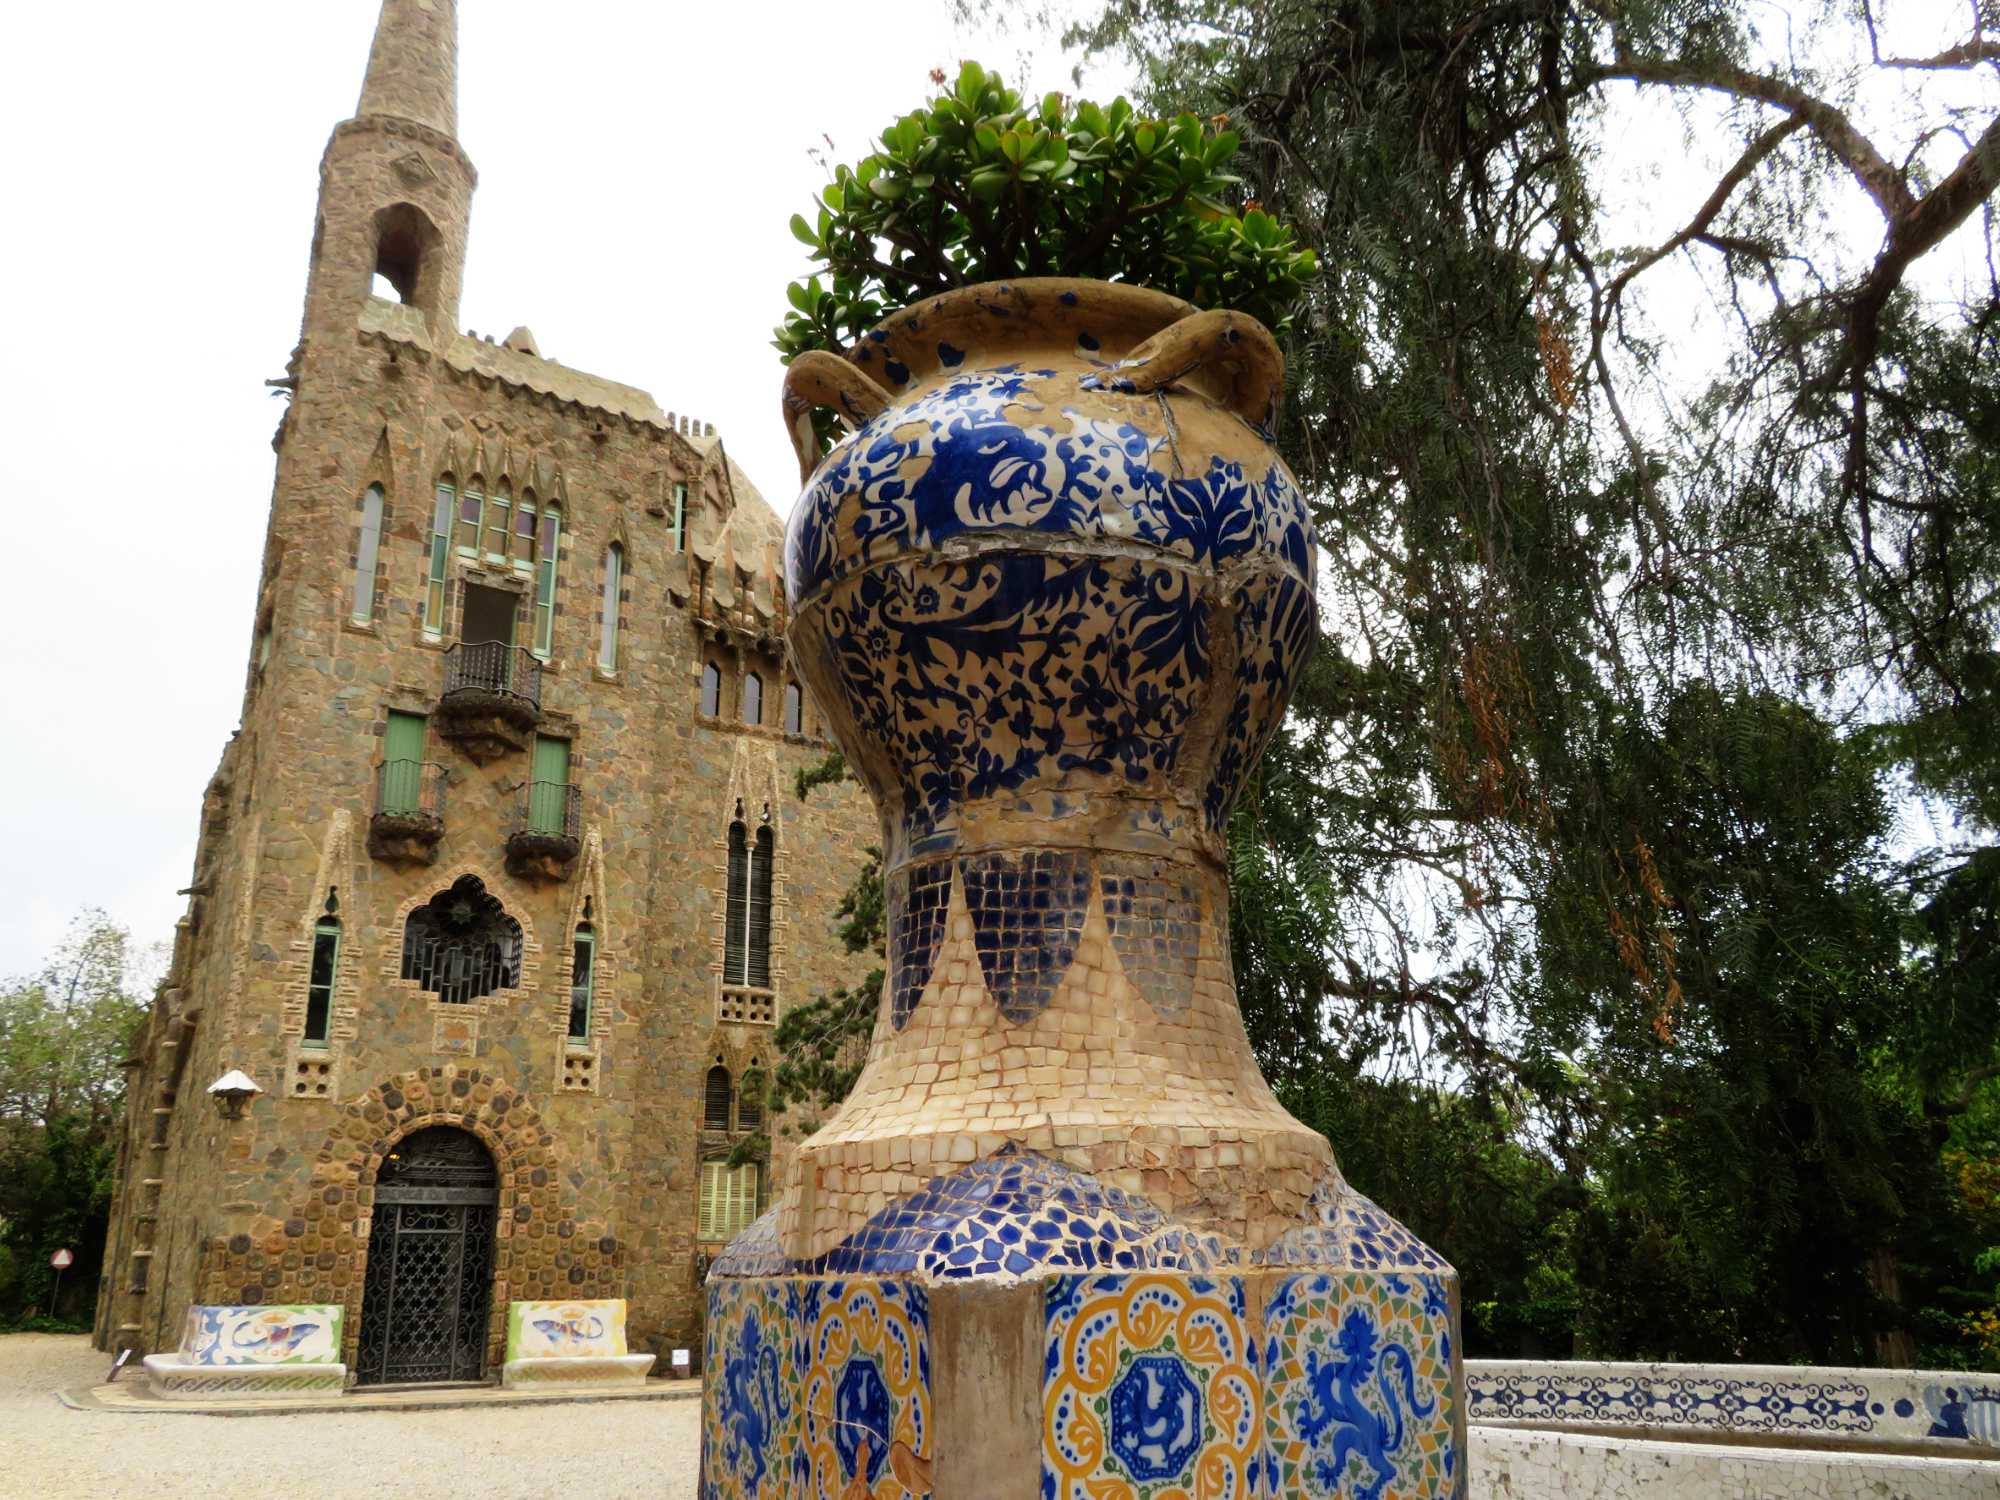 Minder bekende bouwwerken van Gaudí in Barcelona